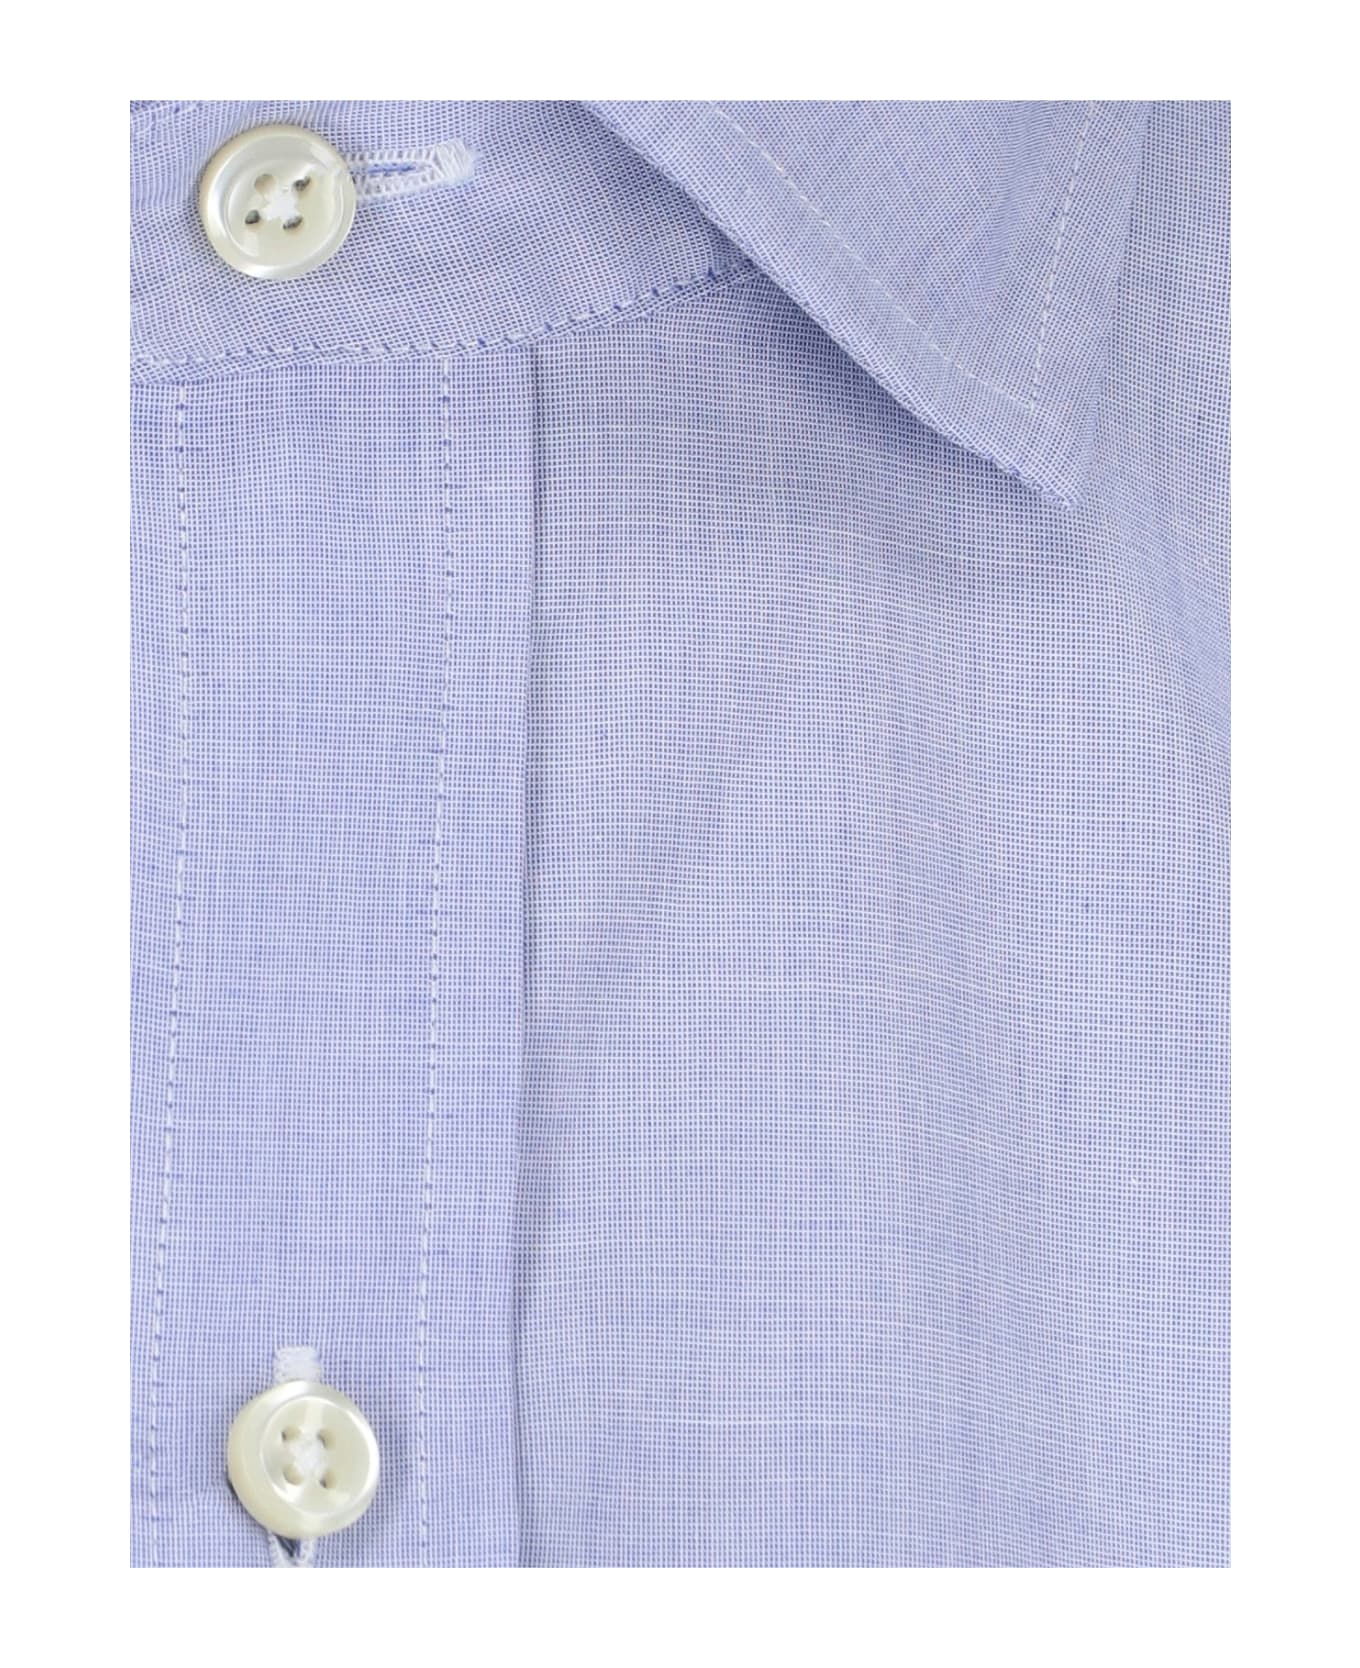 Polo Ralph Lauren Classic Logo Shirt - Light Blue シャツ